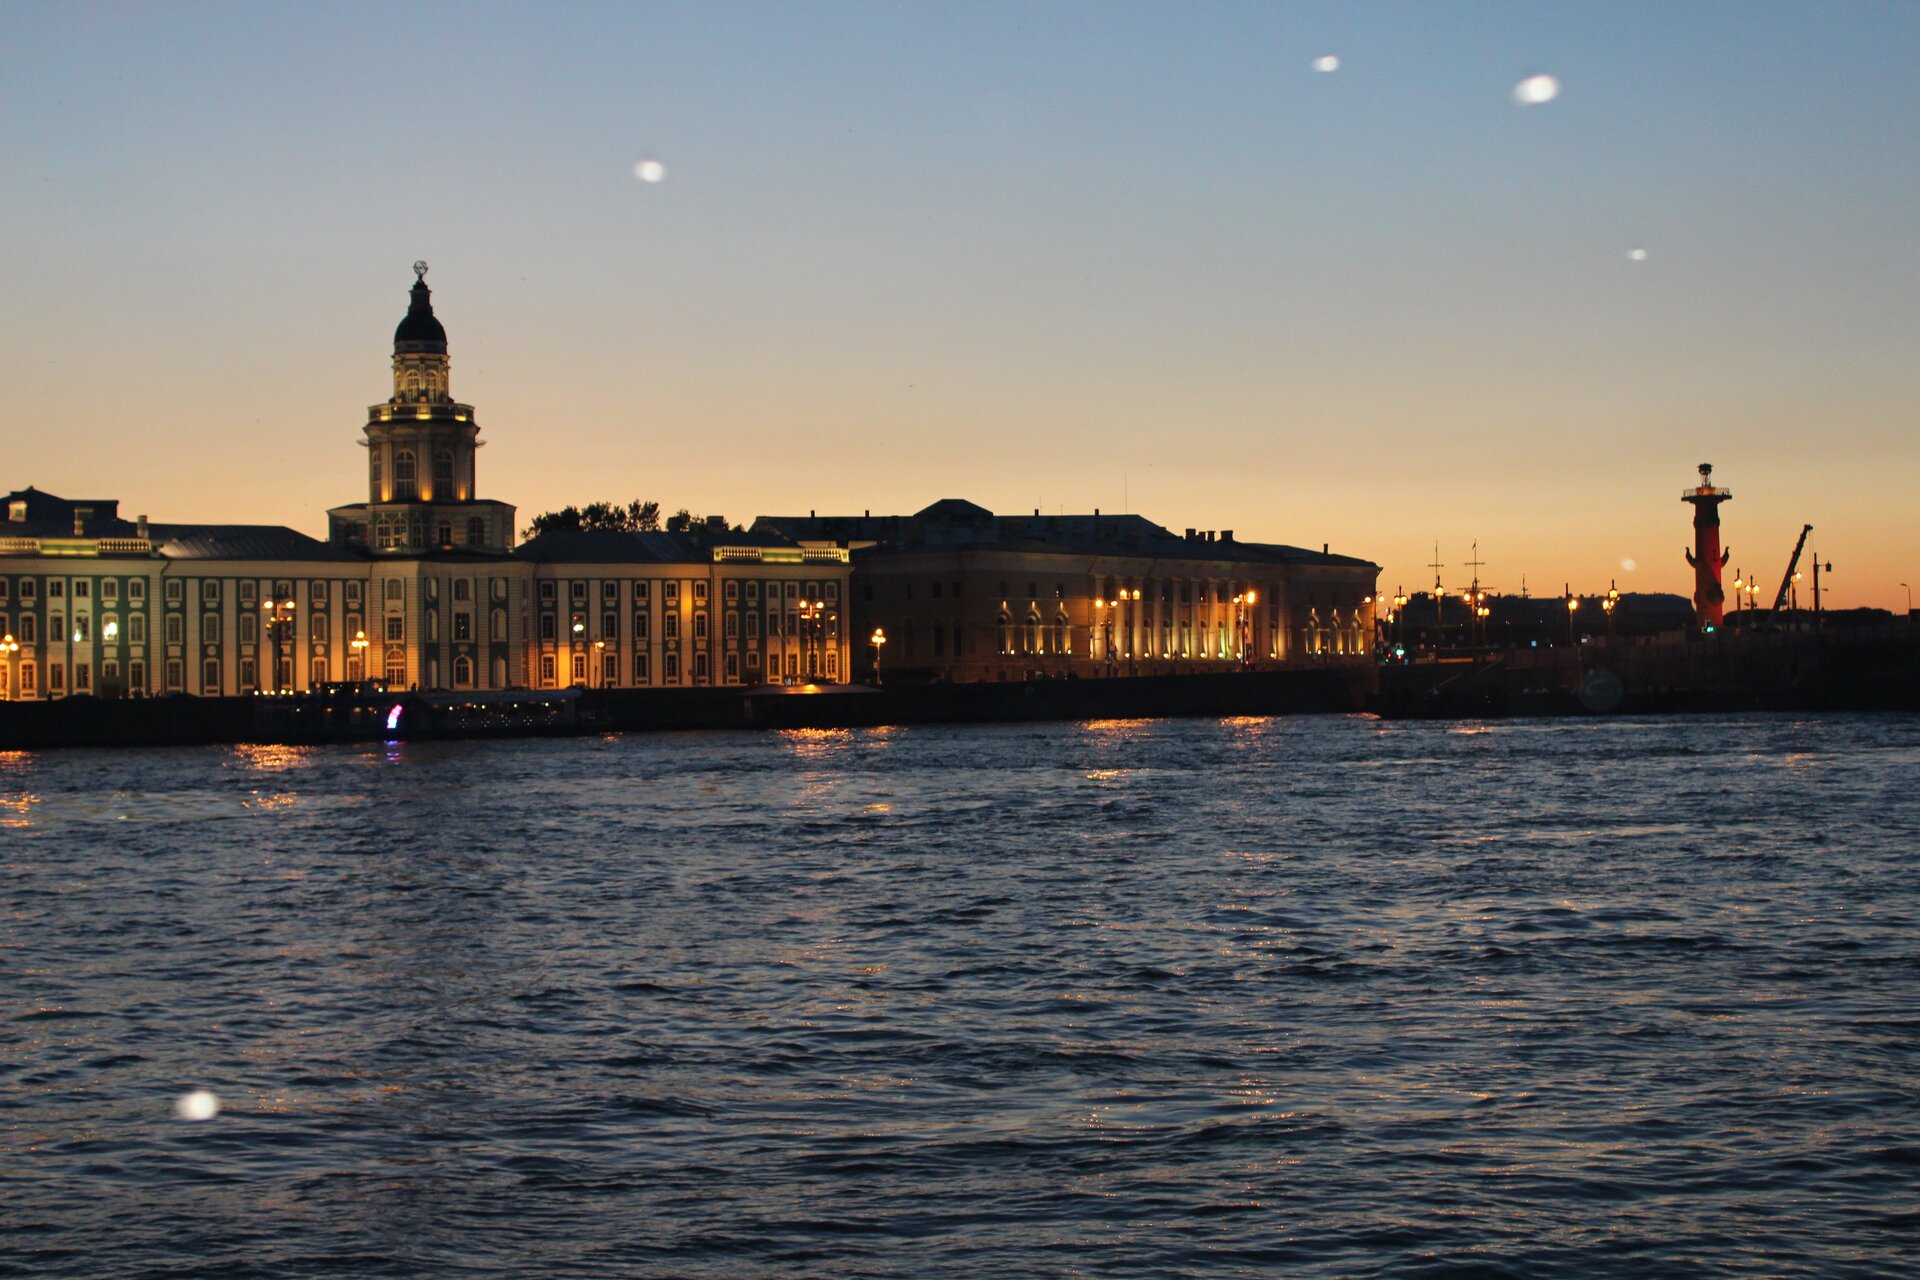 Na zdjęciu jest rzeka, na której brzegu stoi oświetlony długi budynek z wieżą. To Muzeum Ermitażu. Na zdjęciu panuje zmierzch.   